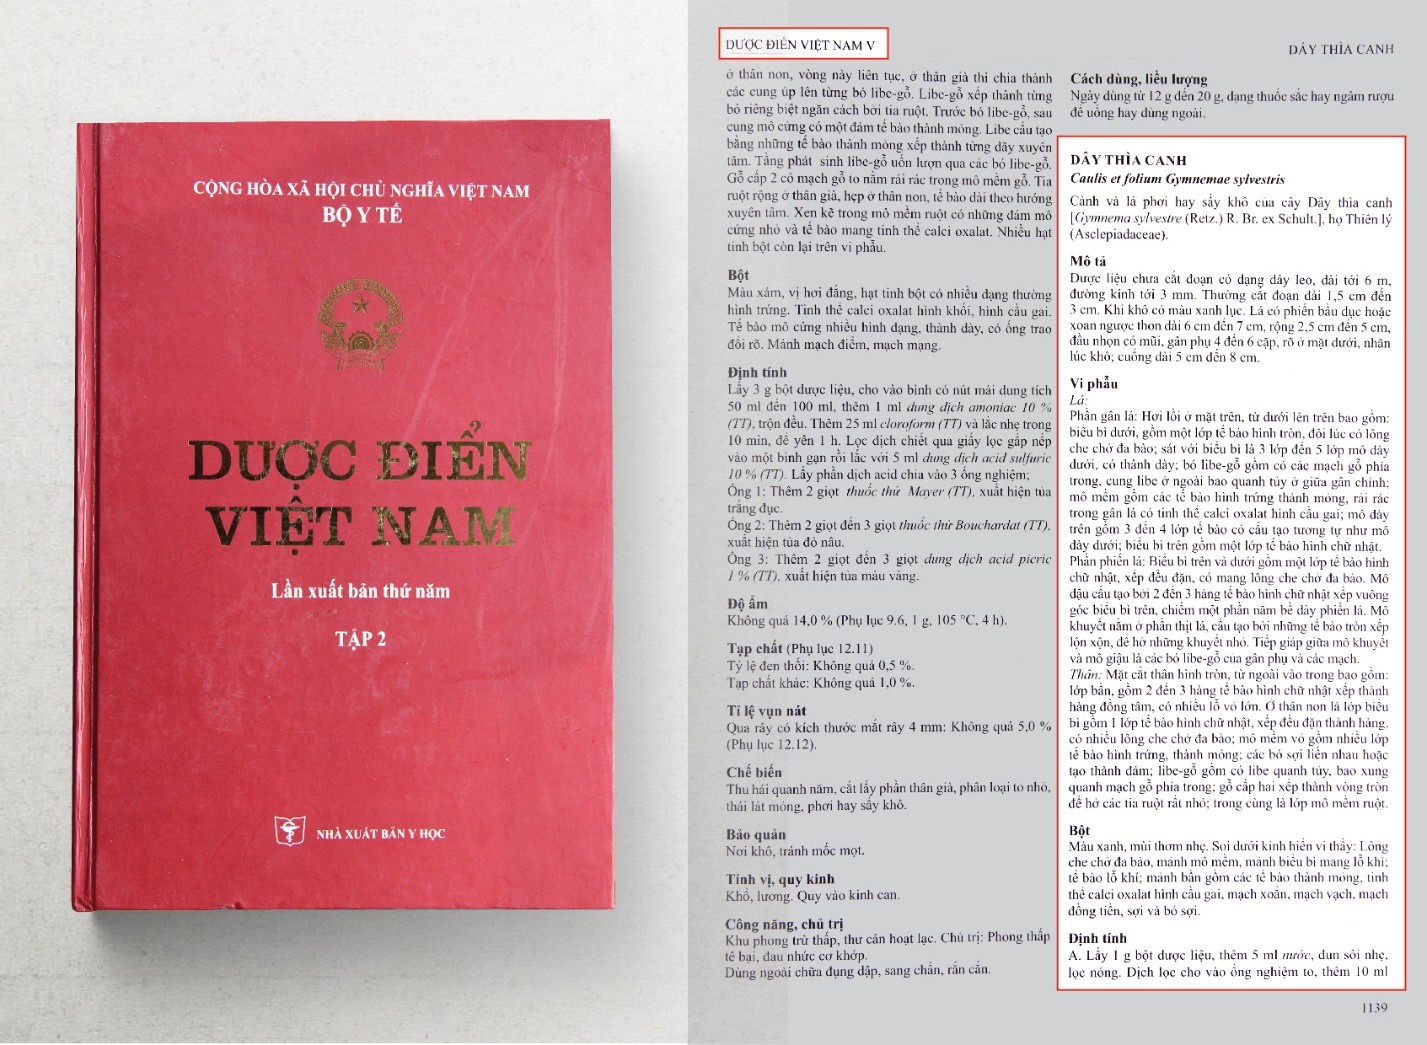 Tác dụng điều trị tiểu đường của Dây thìa canh đã được ghi nhận trong Dược điển Việt Nam